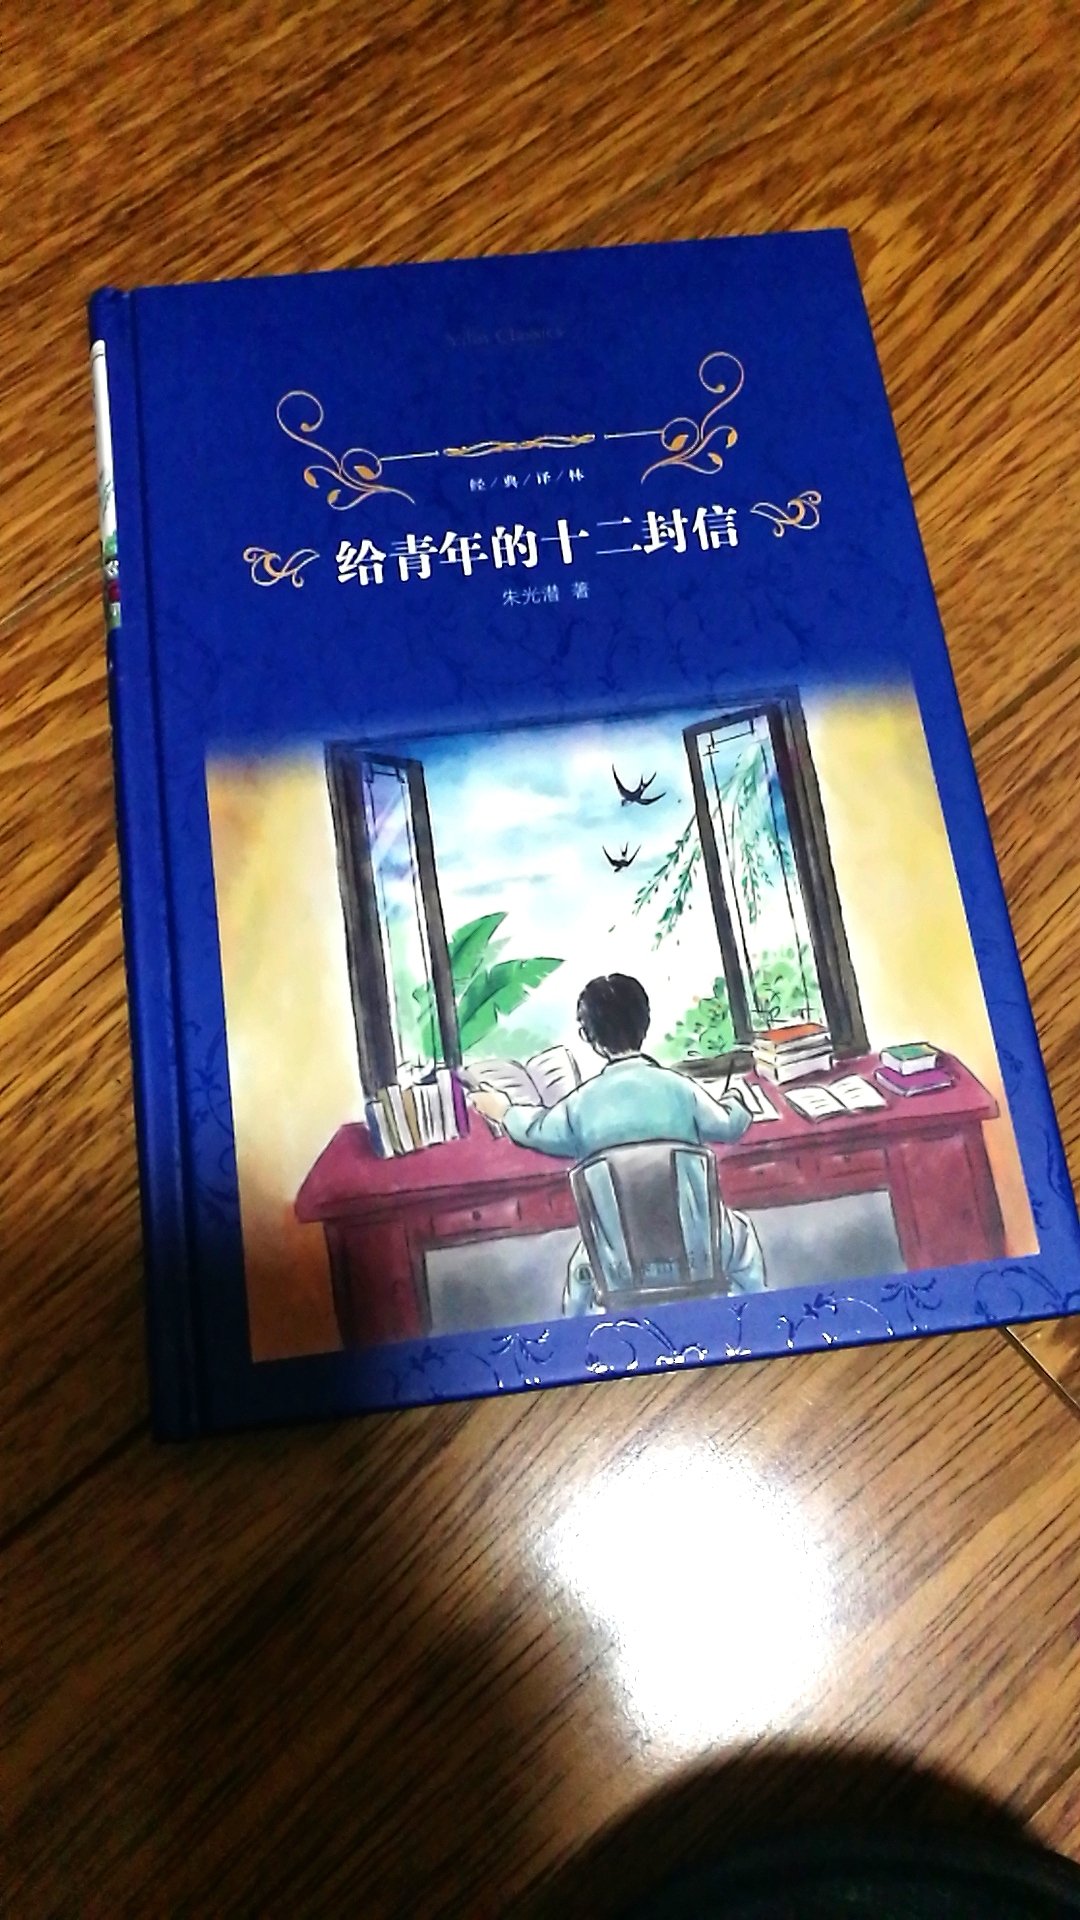 朱光潜先生的书值得精心阅读。译林出版社的书值得入手和收藏